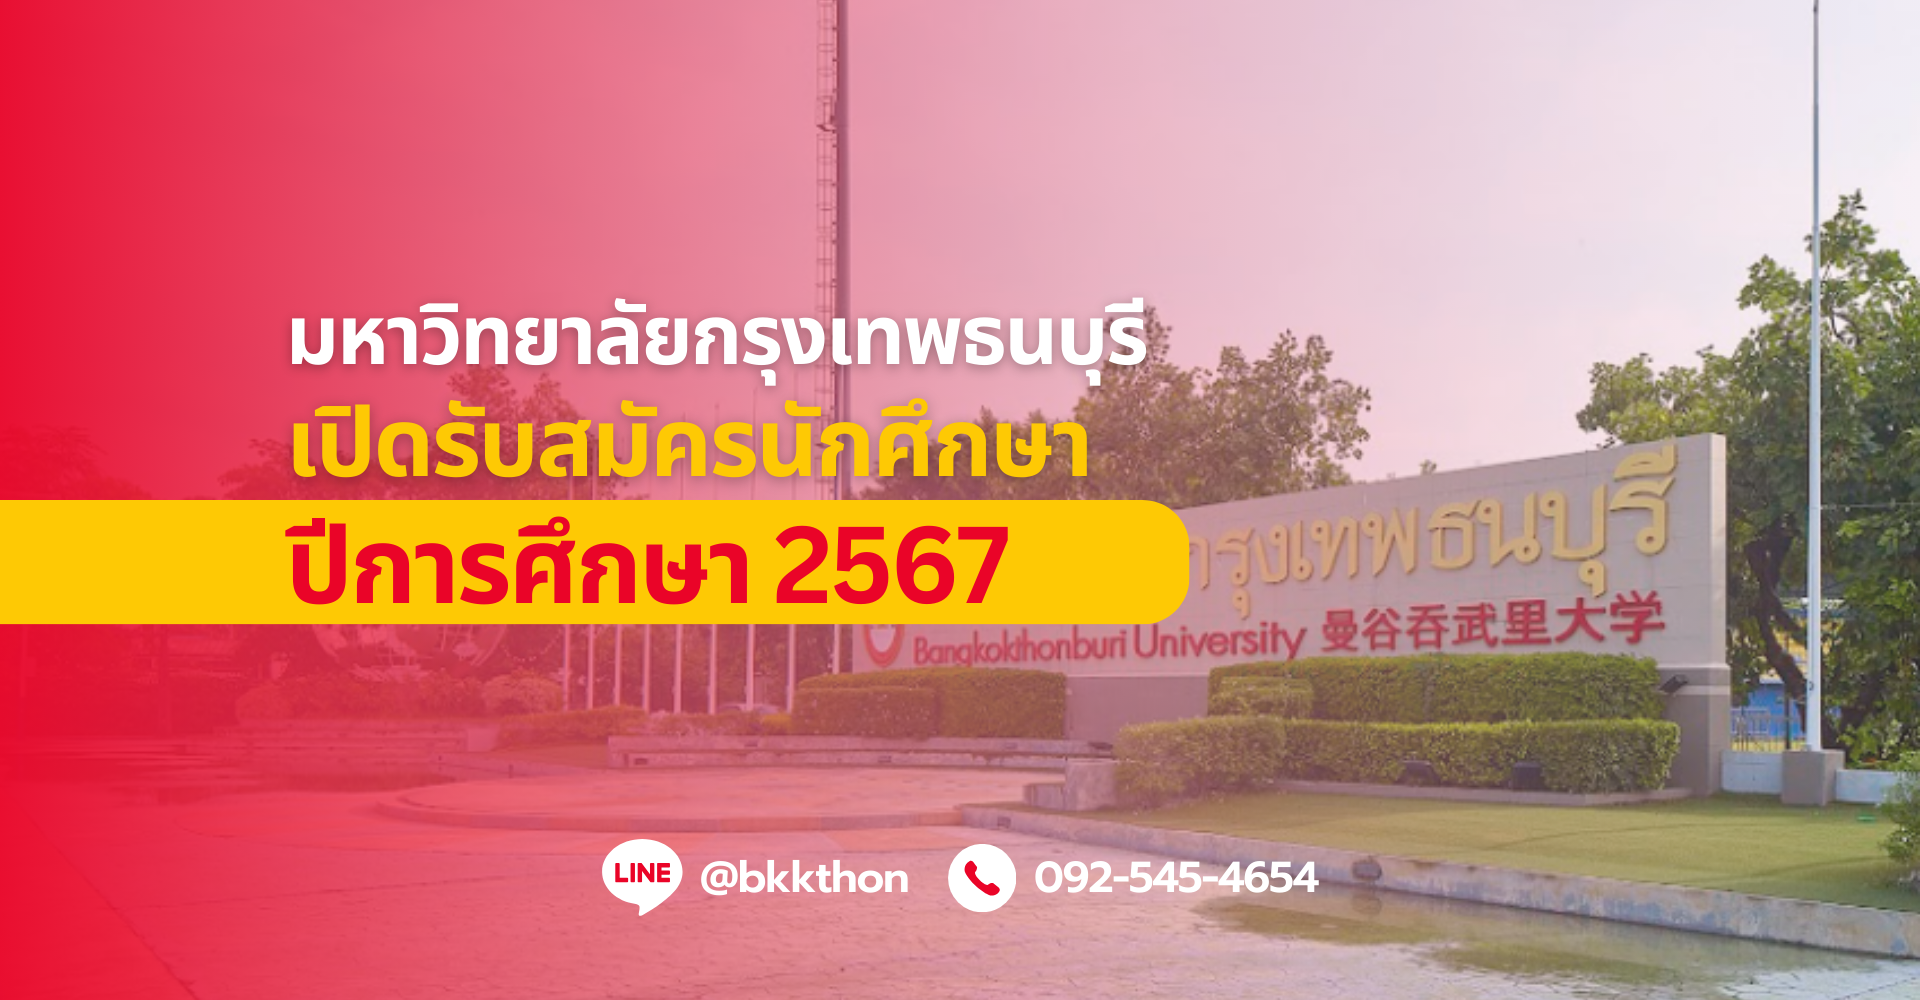 ม.กรุงเทพธนบุรี เปิดรับสมัครนักศึกษาปีการศึกษา 2567